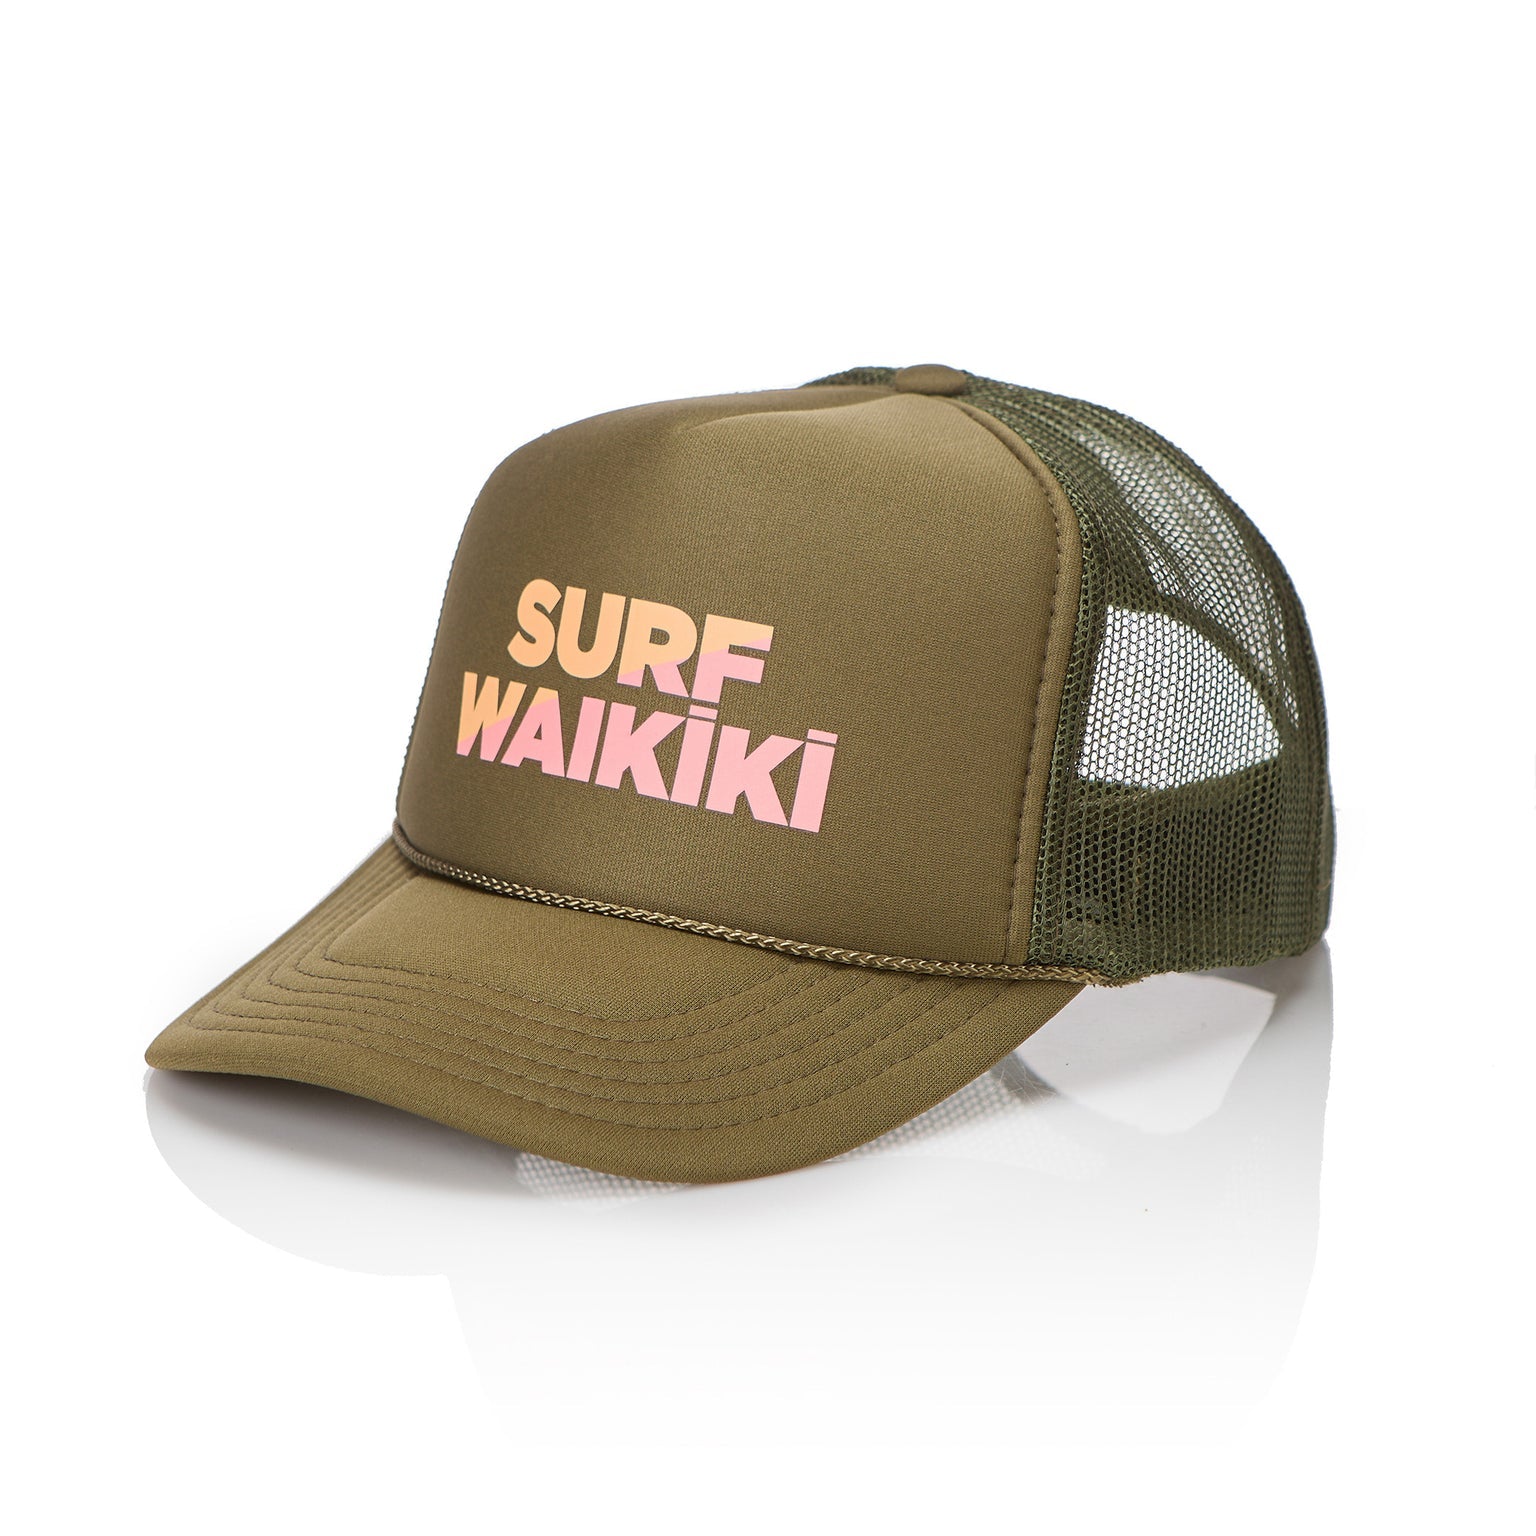 Surf Waikiki Trucker Hat